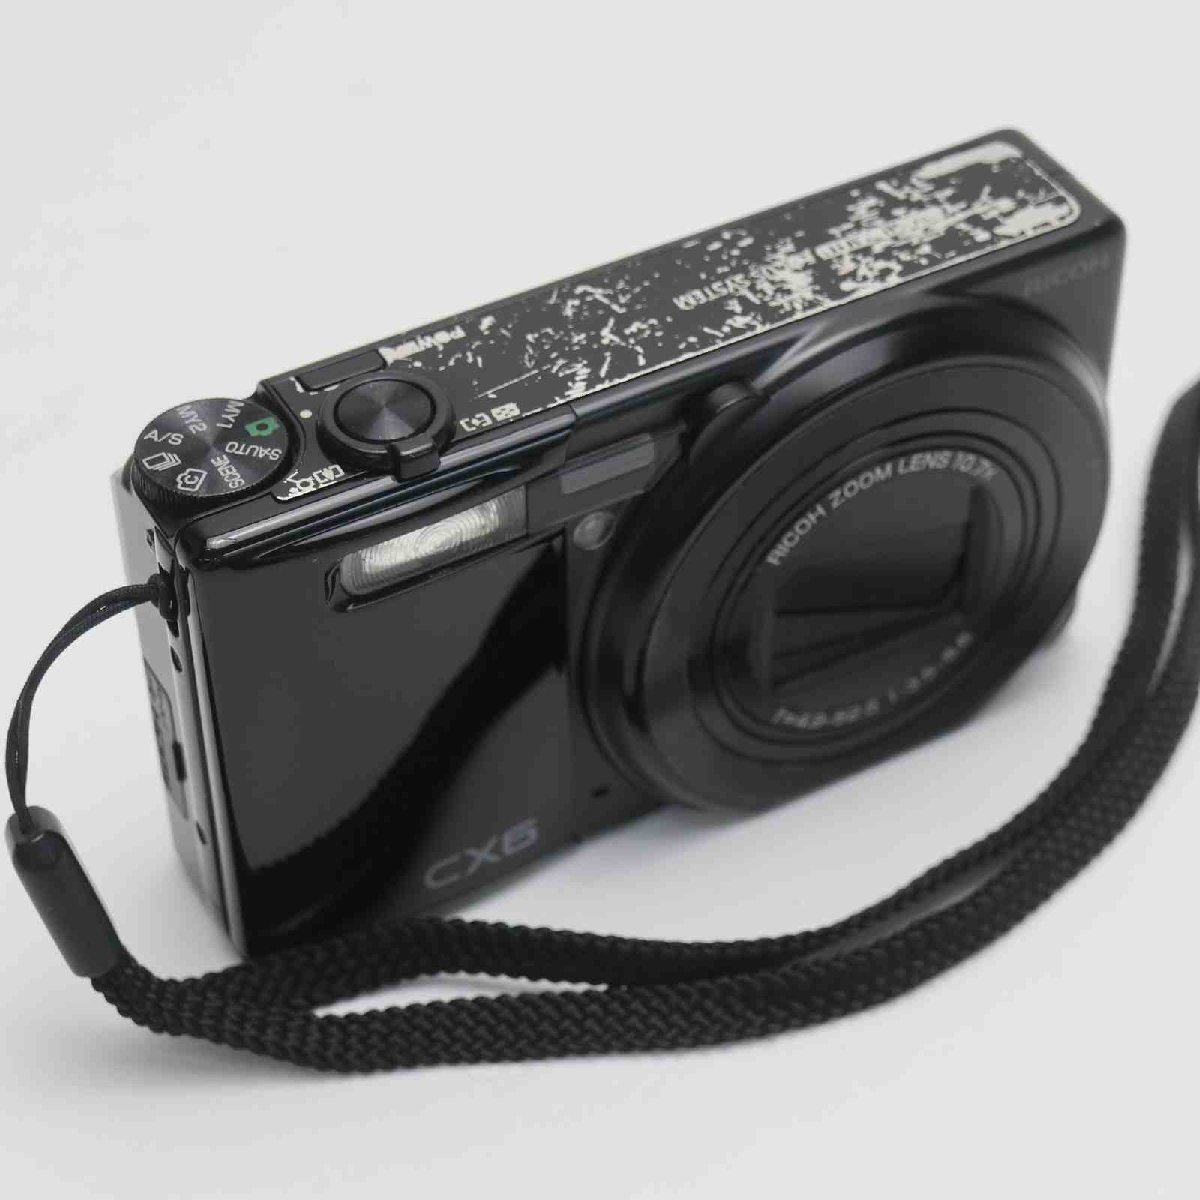 良品中古 CX6 ブラック 即日発送 デジカメ RICOH デジタルカメラ 本体 あすつく 土日祝発送OK